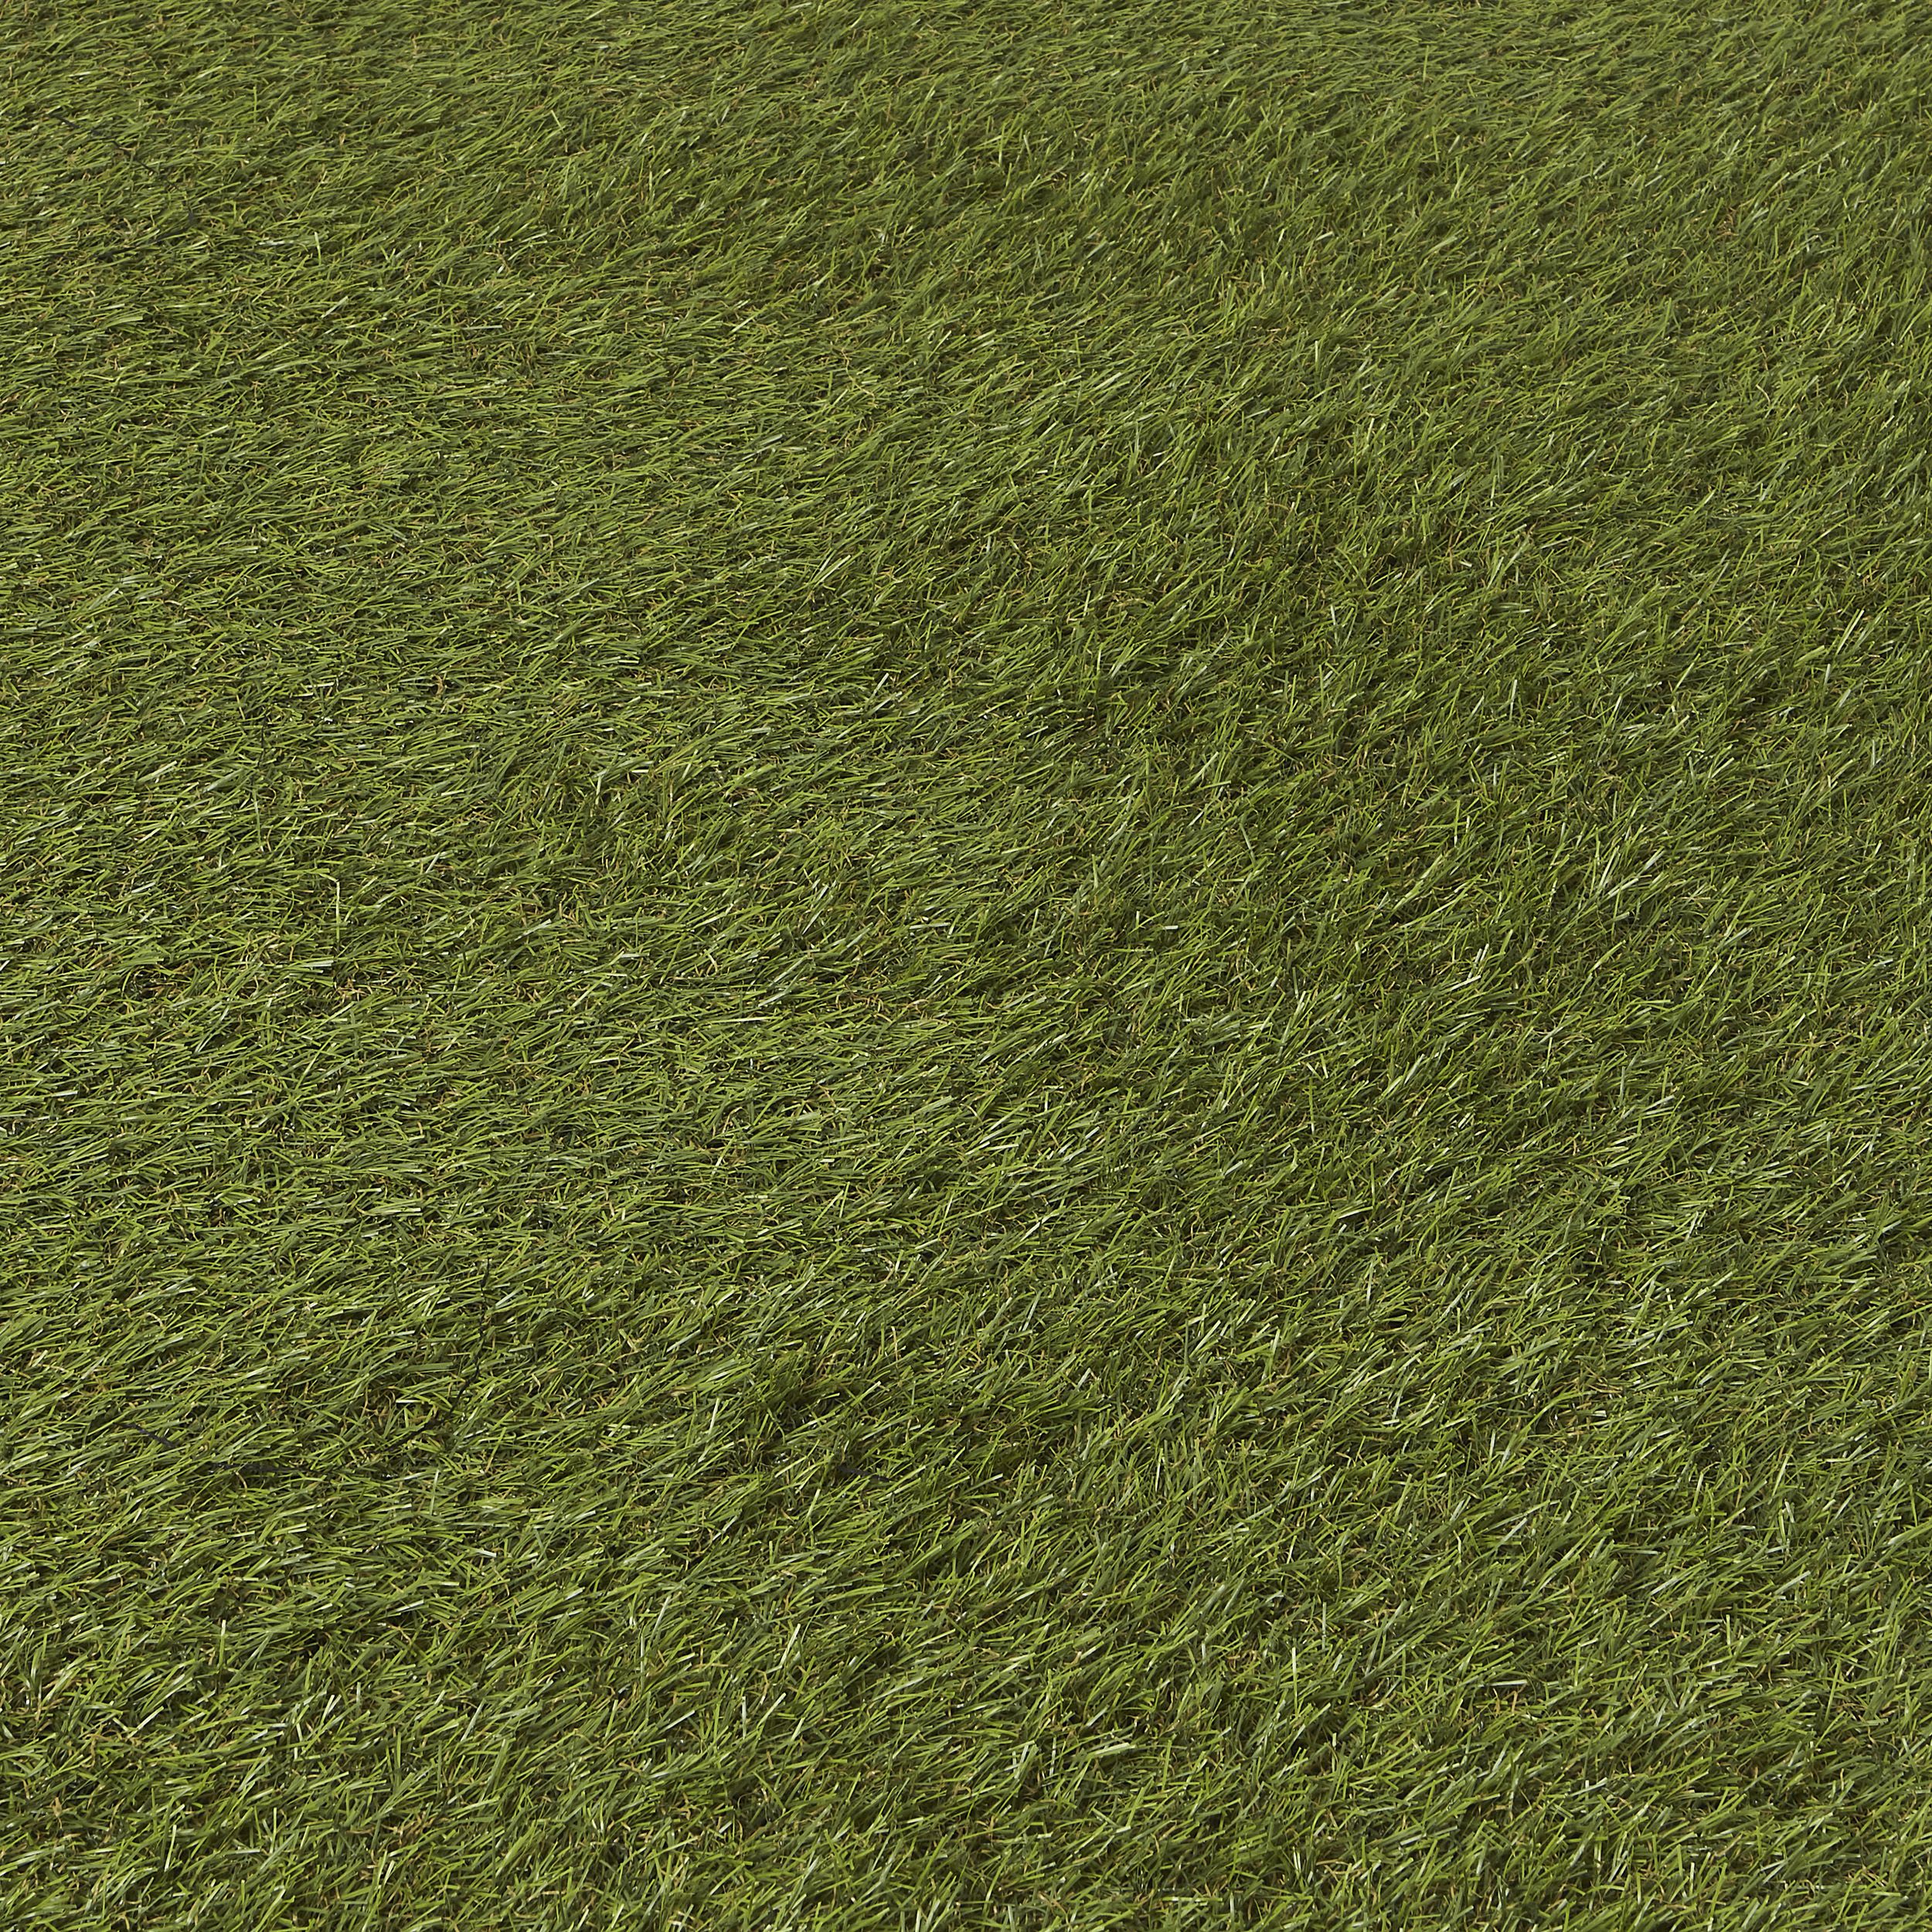 Dennis Artificial grass 8m² (T)22mm